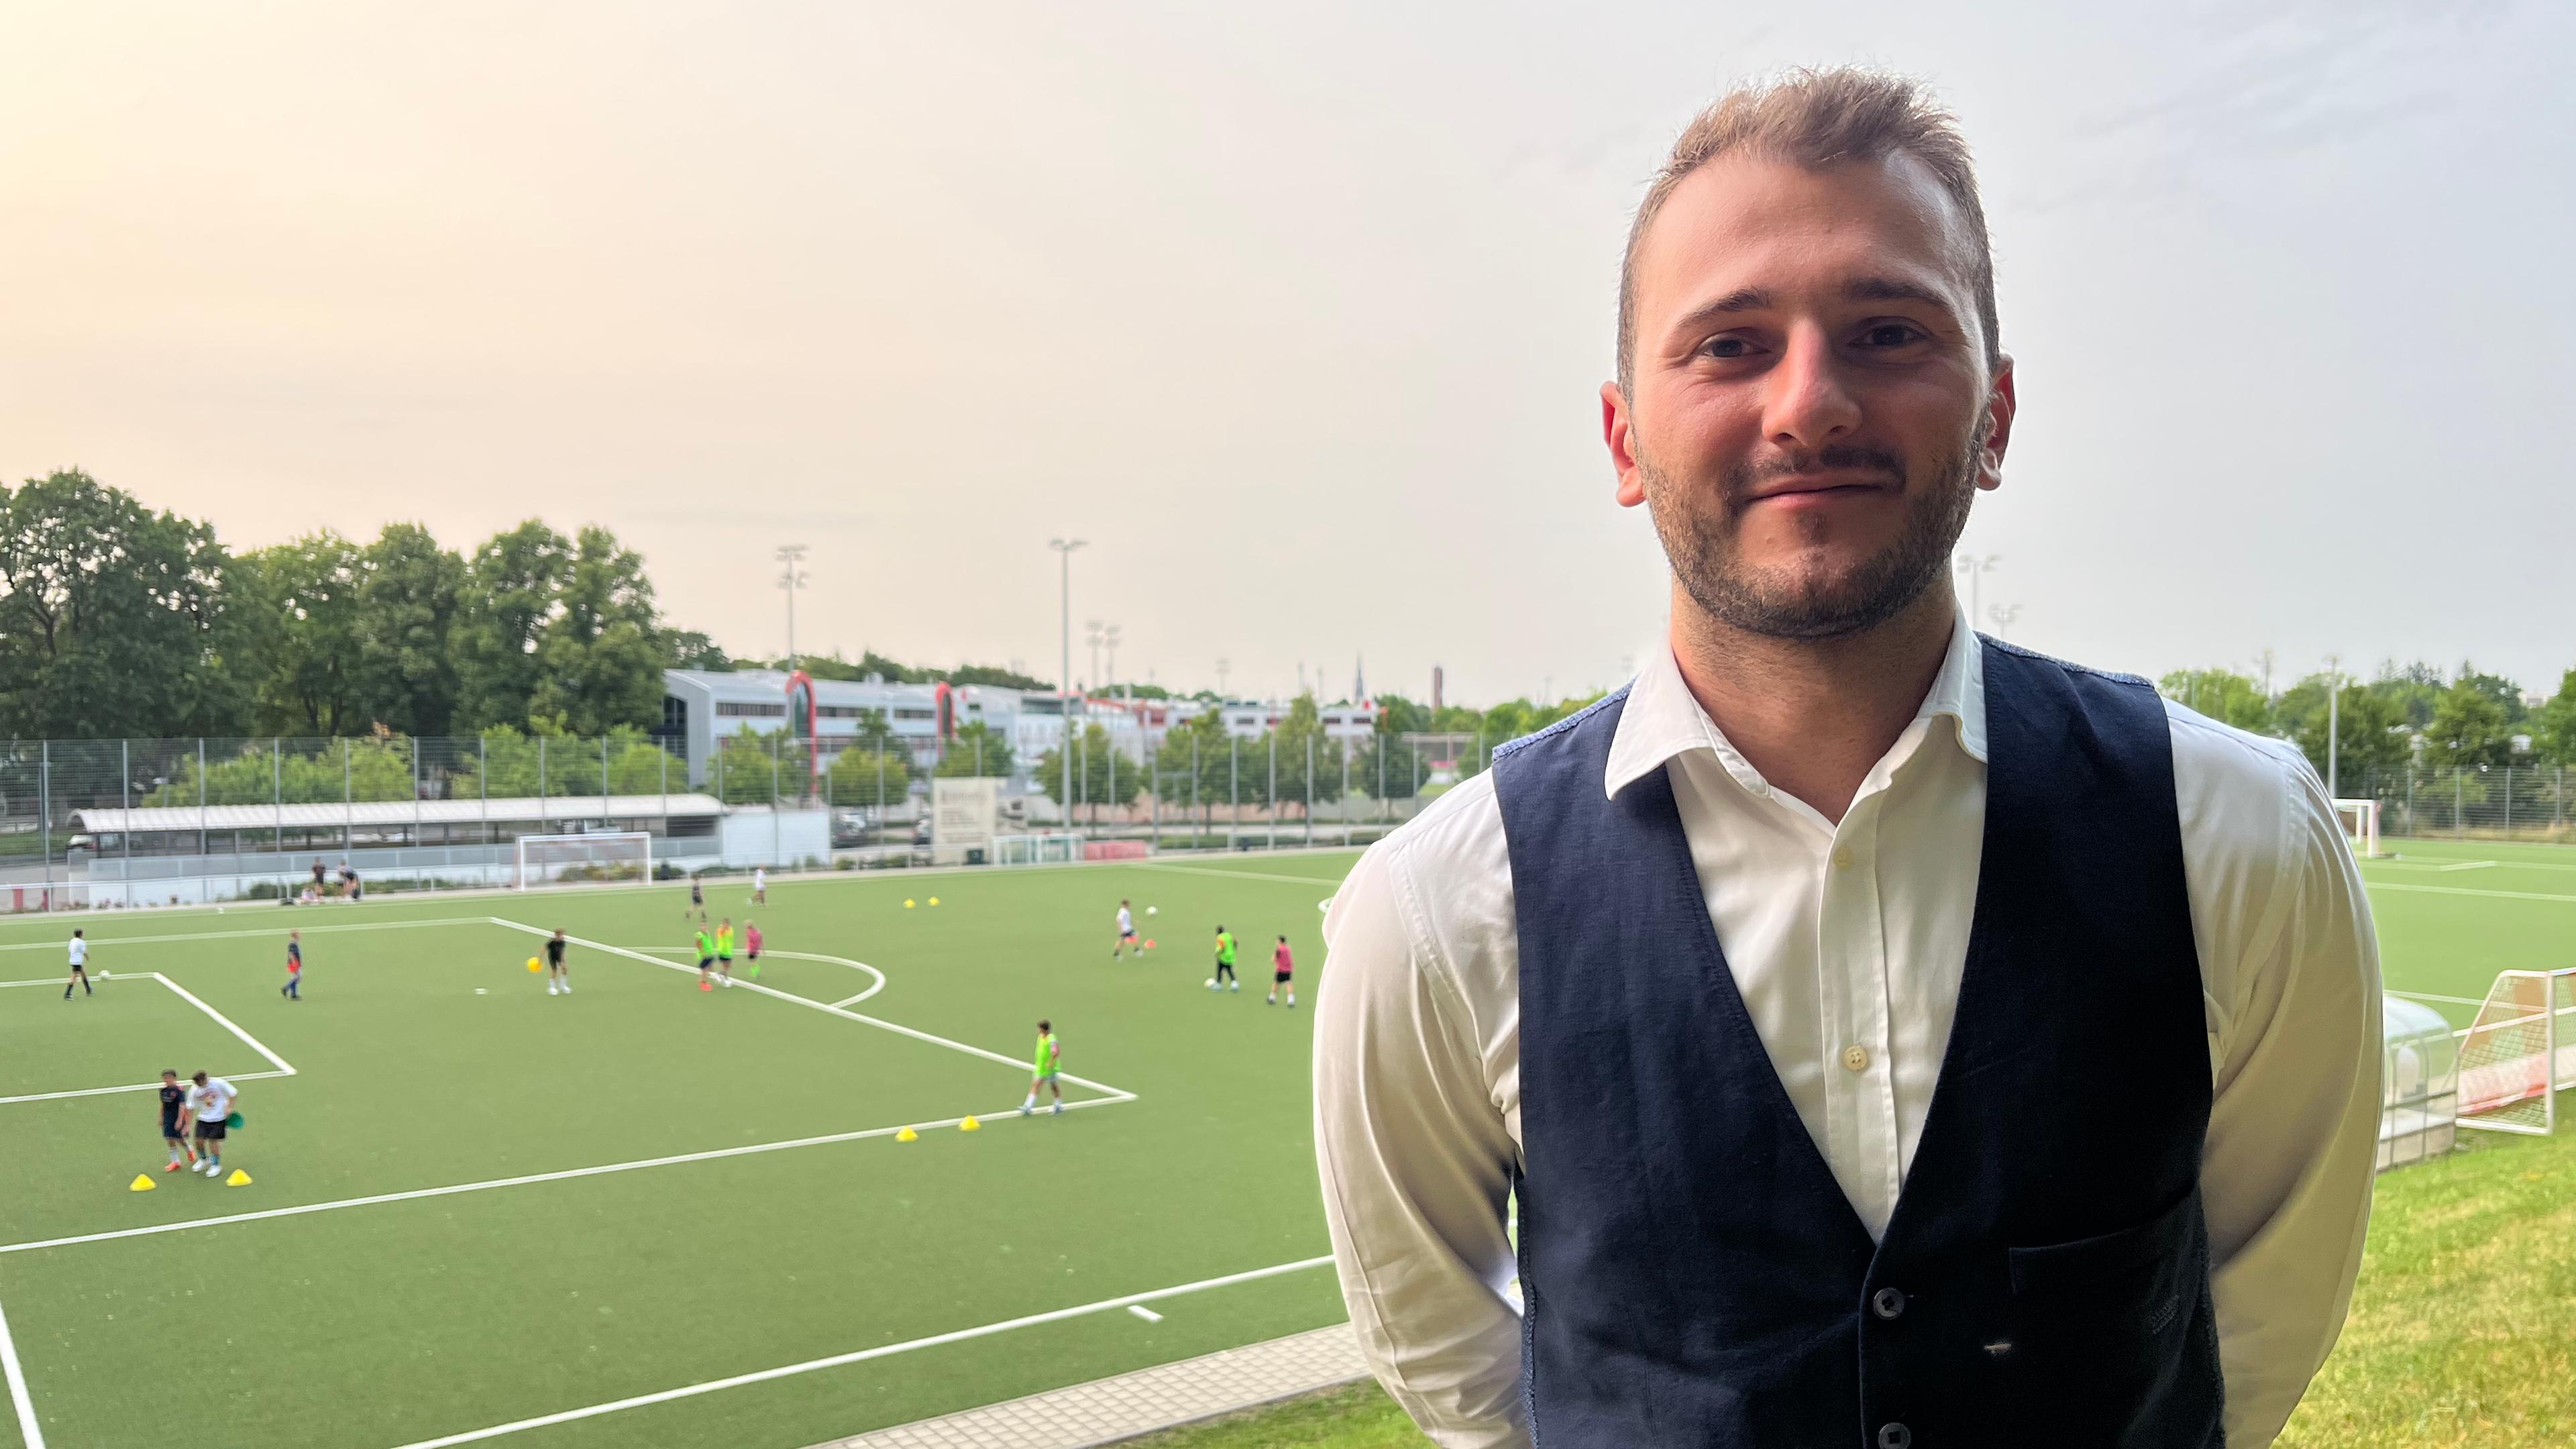 Herrlin Markja, 1. Vorsitzender des FC Sportfreunde München, steht vor dem Fußballplatz seines Klubs